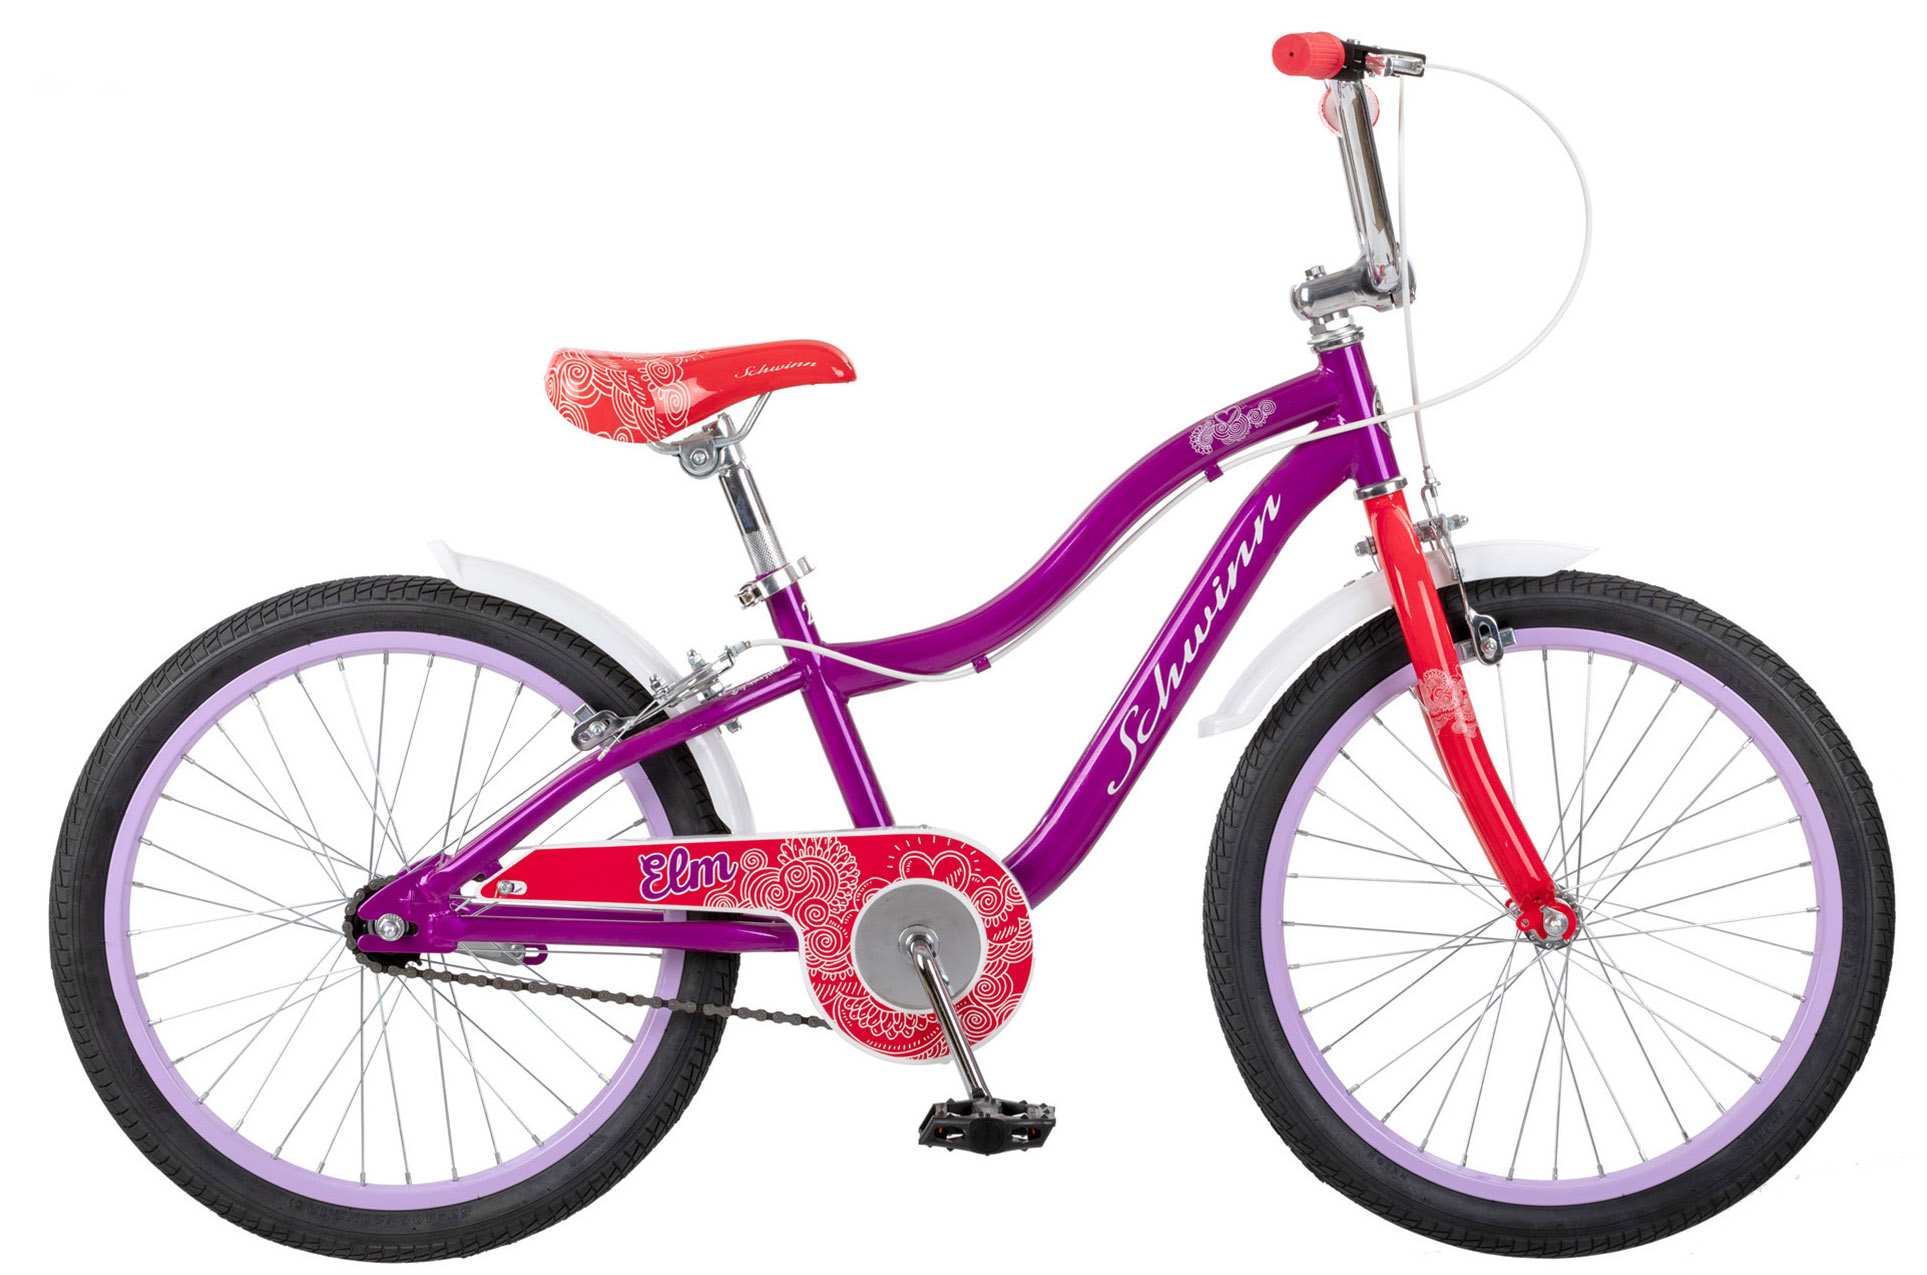  Отзывы о Детском велосипеде Schwinn Elm 20 2020